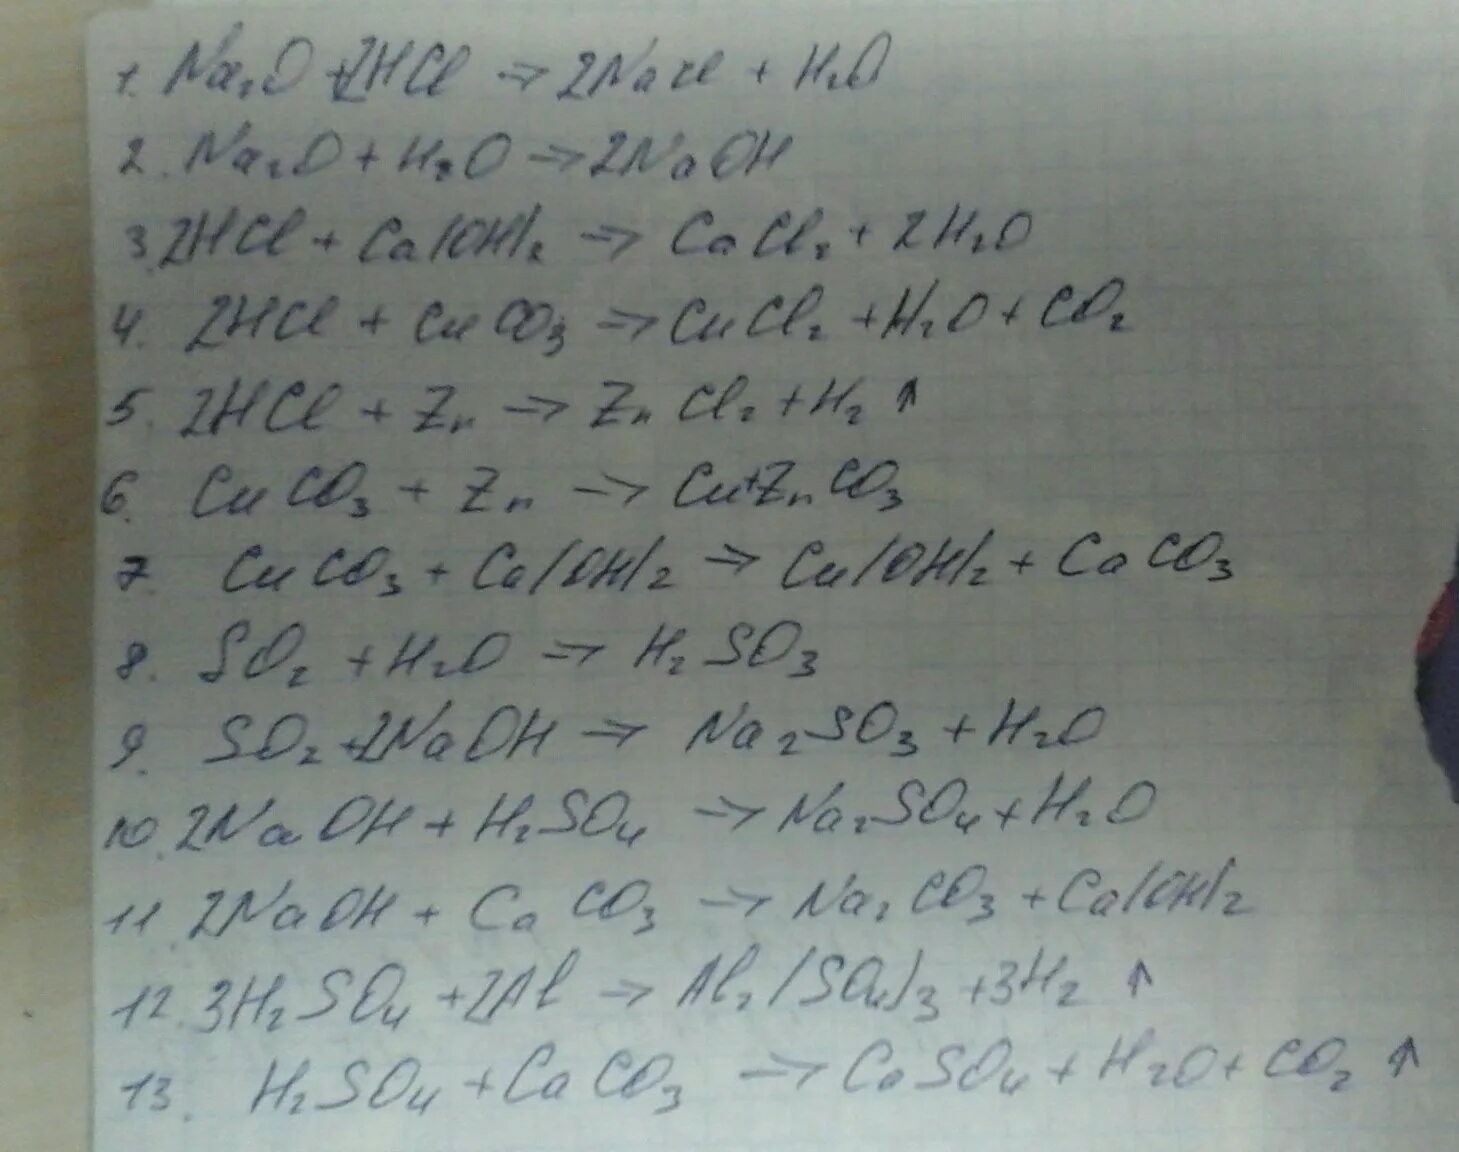 Na2so3 h2o hcl. Na2o+HCL уравнение реакции. Na2o+HCL уравнение. Na2o+2hcl 2nacl+h2o Тип реакции. Na2o HCL NACL h2o.